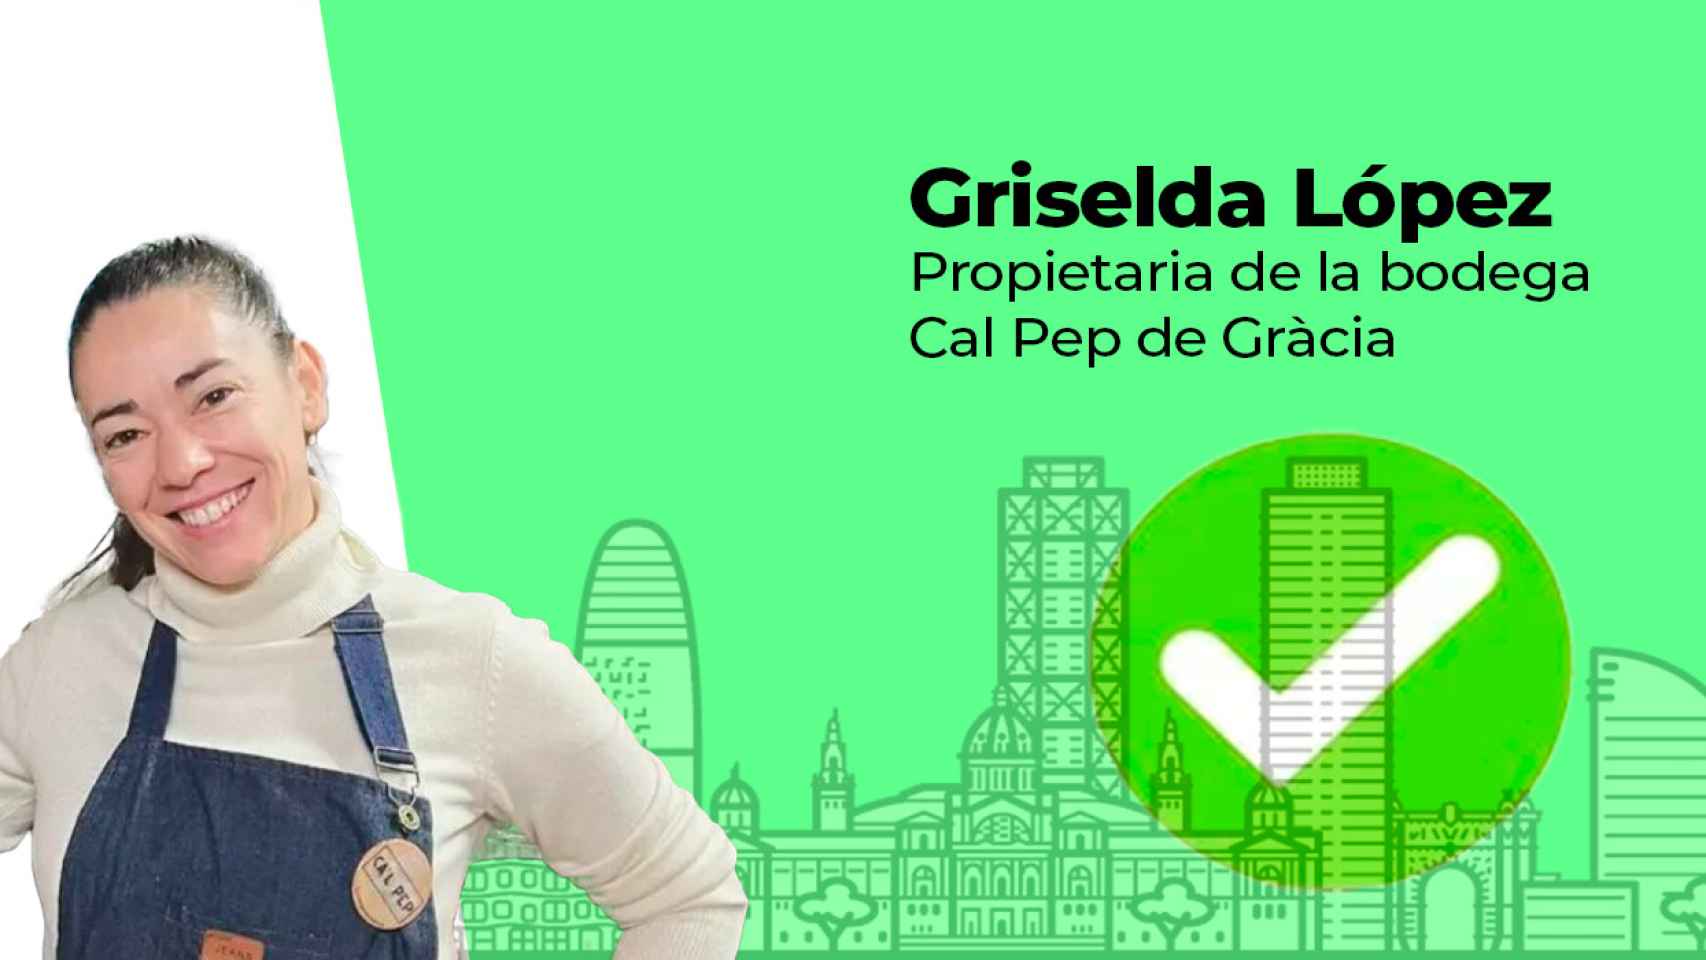 Griselda López, propietaria de la Bodega Cal Pep de Gràcia